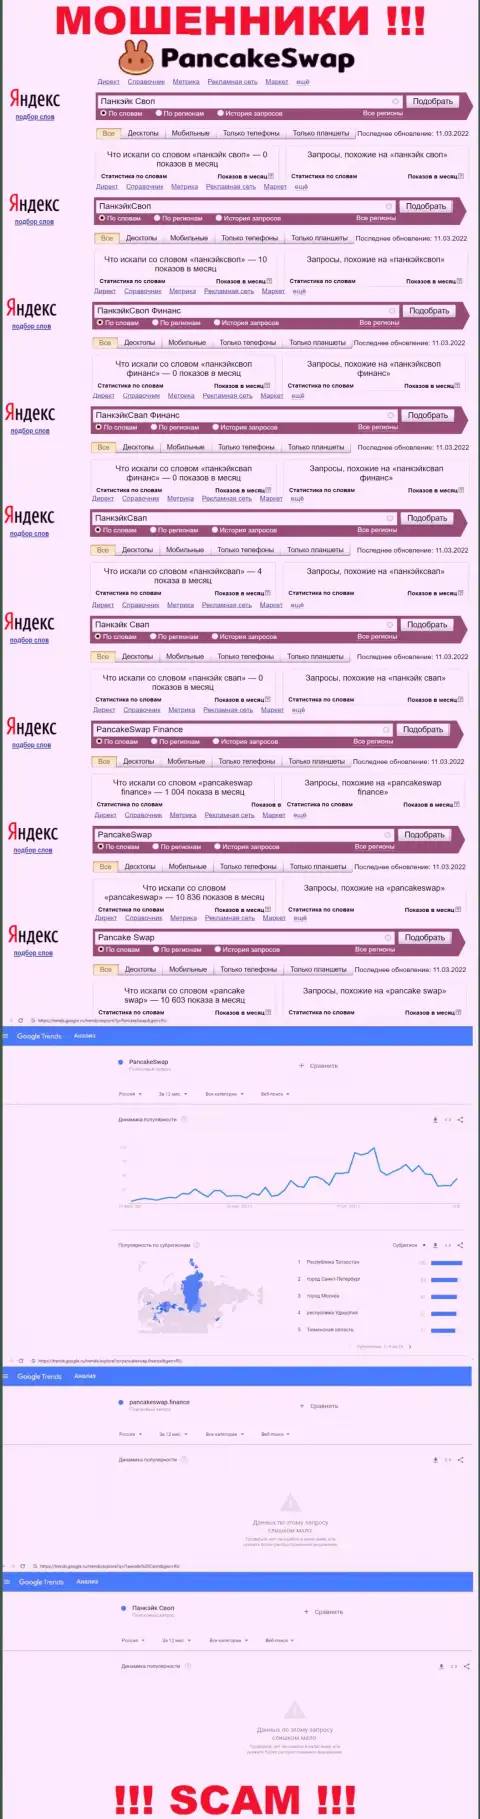 Как часто интересовались мошенниками PancakeSwap Finance в поисковиках сети Интернет ???